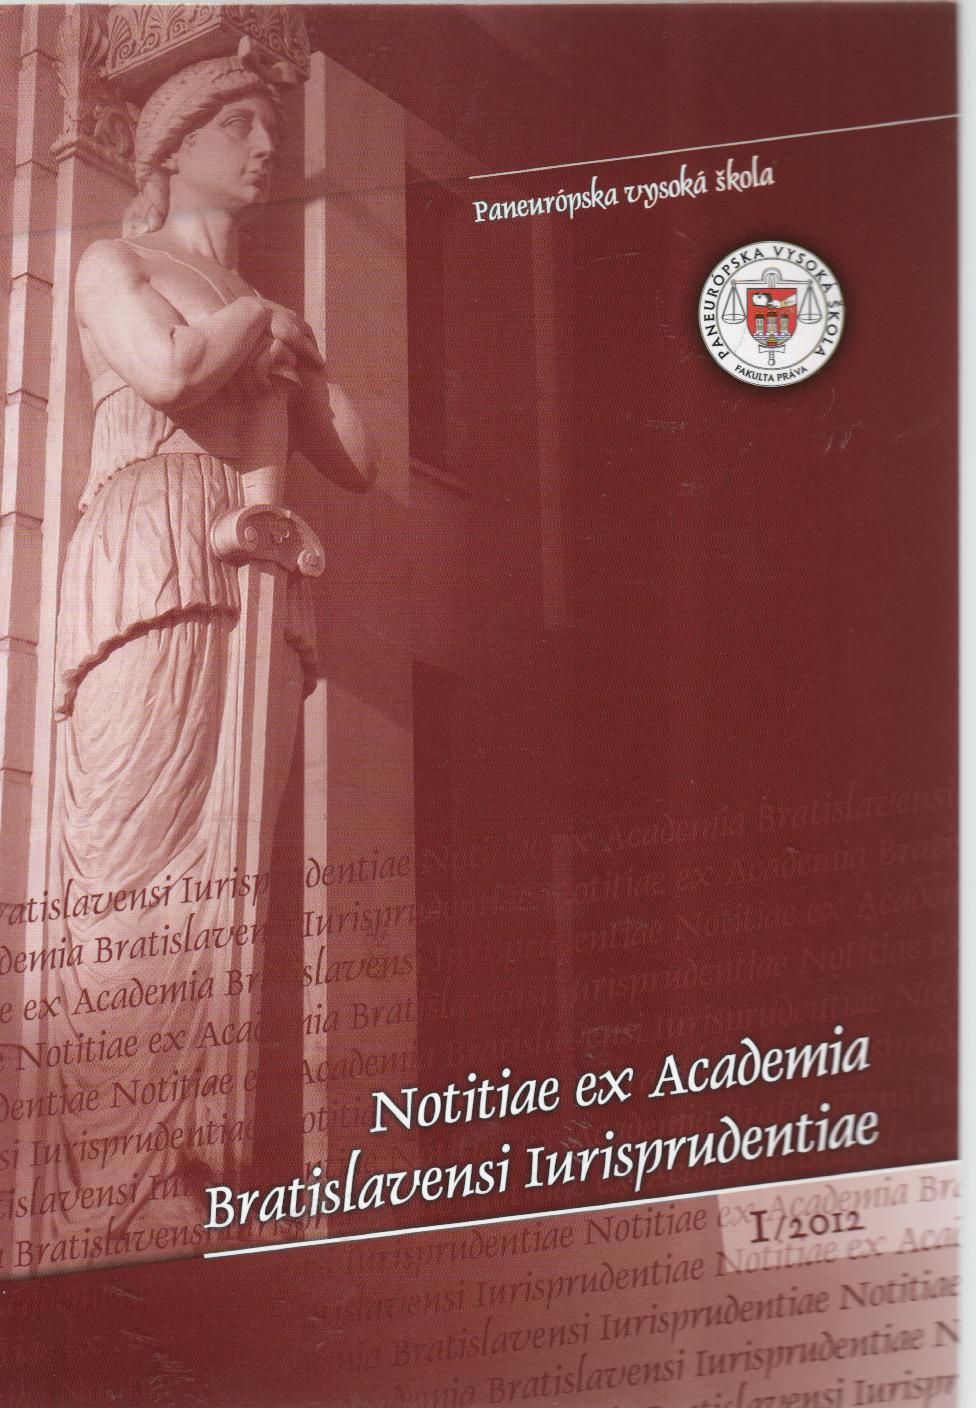 Notitiae ex Academia Bratislavensi Iurisprudentiae 1/2012